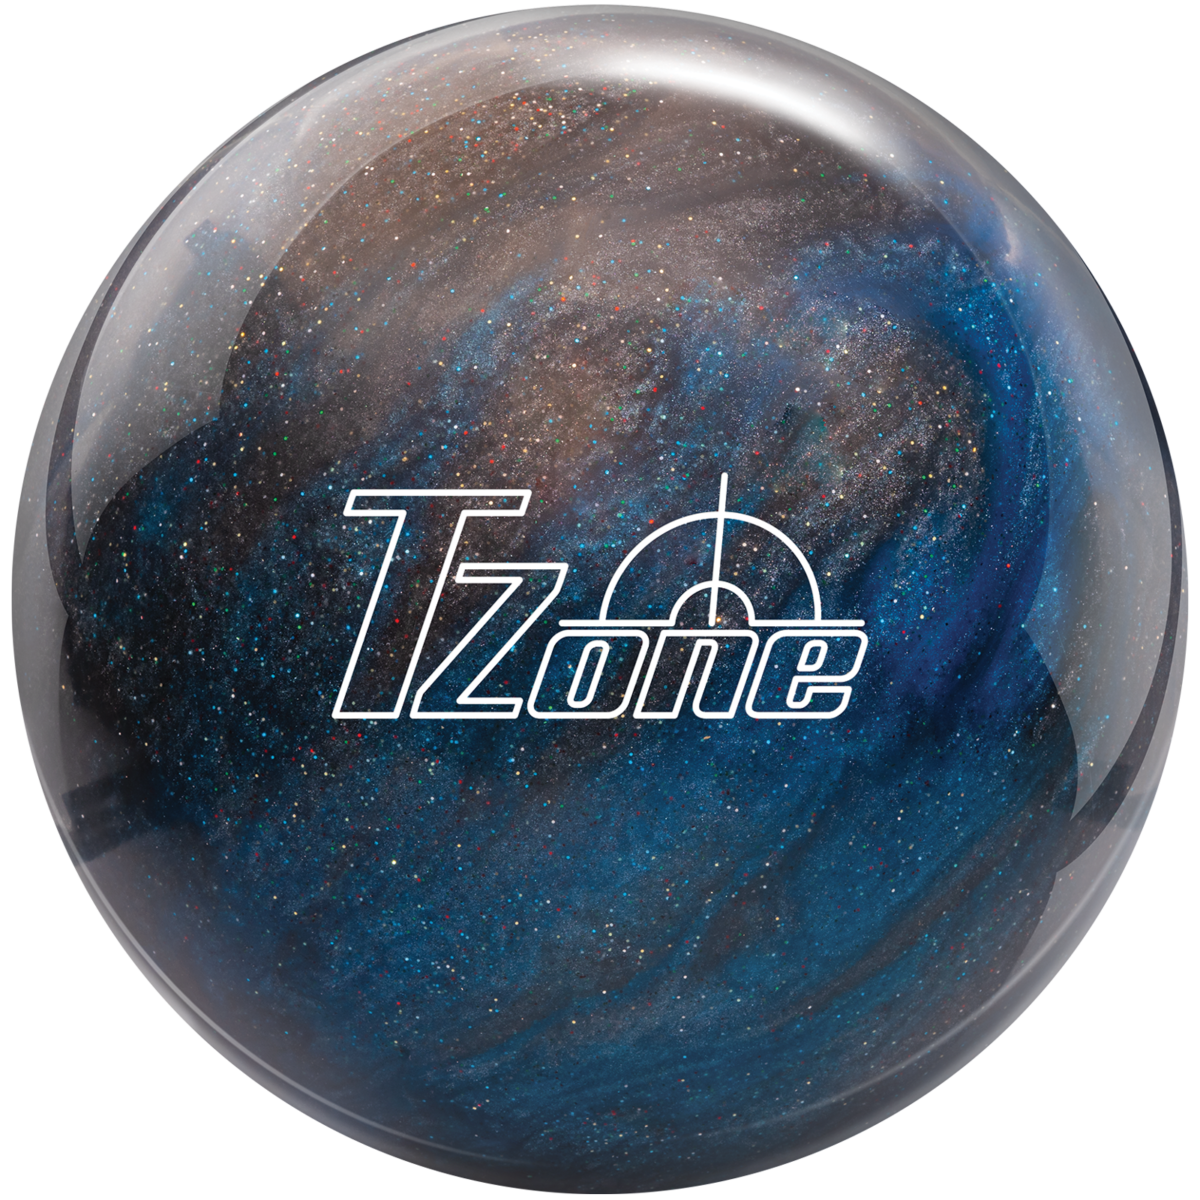 TZone™ Indigo Swirl | Brunswick Bowling